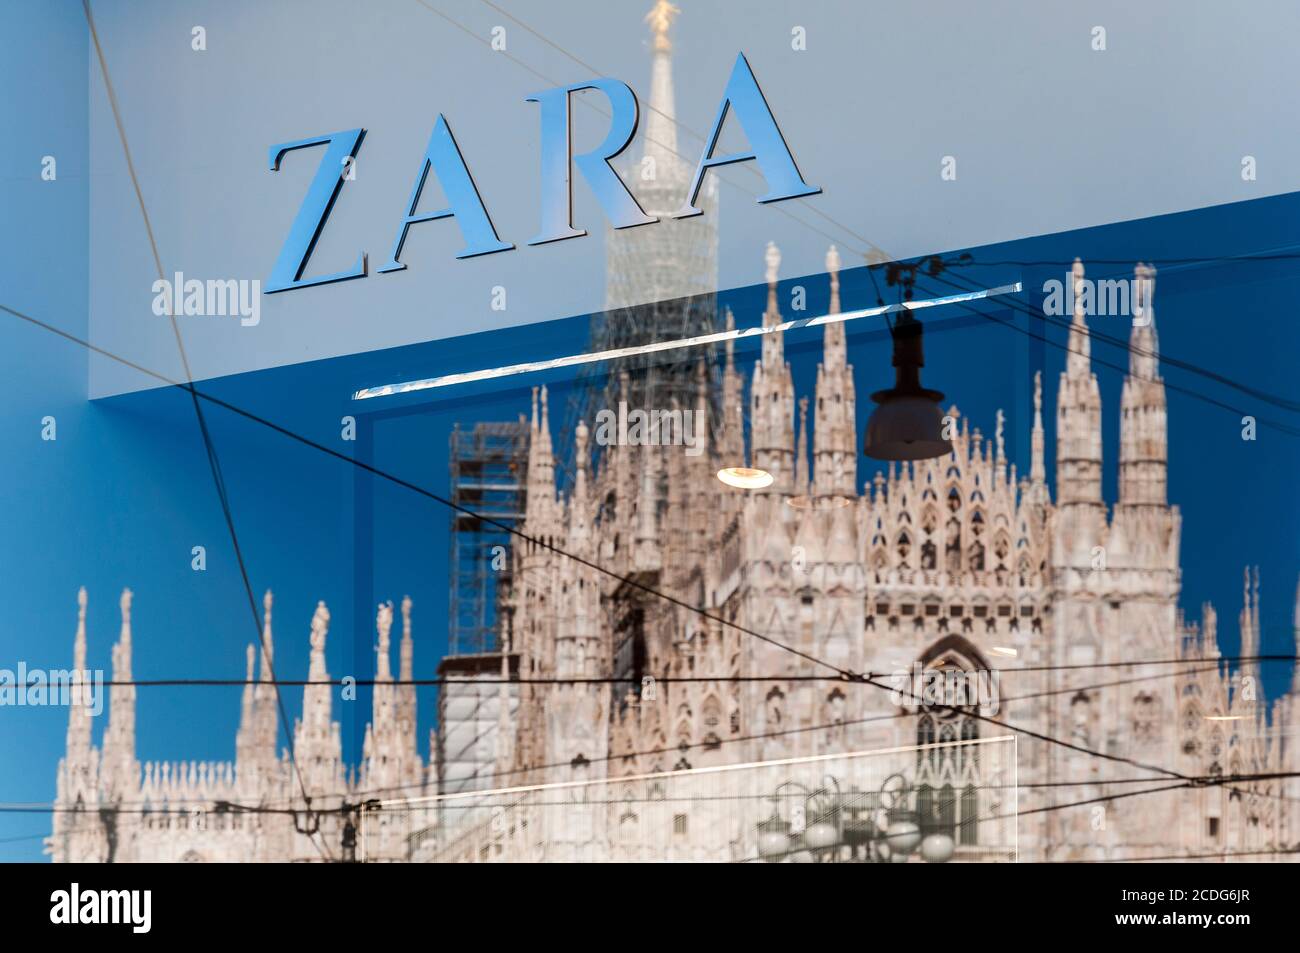 Das Logo des Bekleidungshändlers Zara mit der Kathedrale Duomo spiegelt sich im Schaufenstergeschäft in Mailand, Lombardei, Italien wider Stockfoto